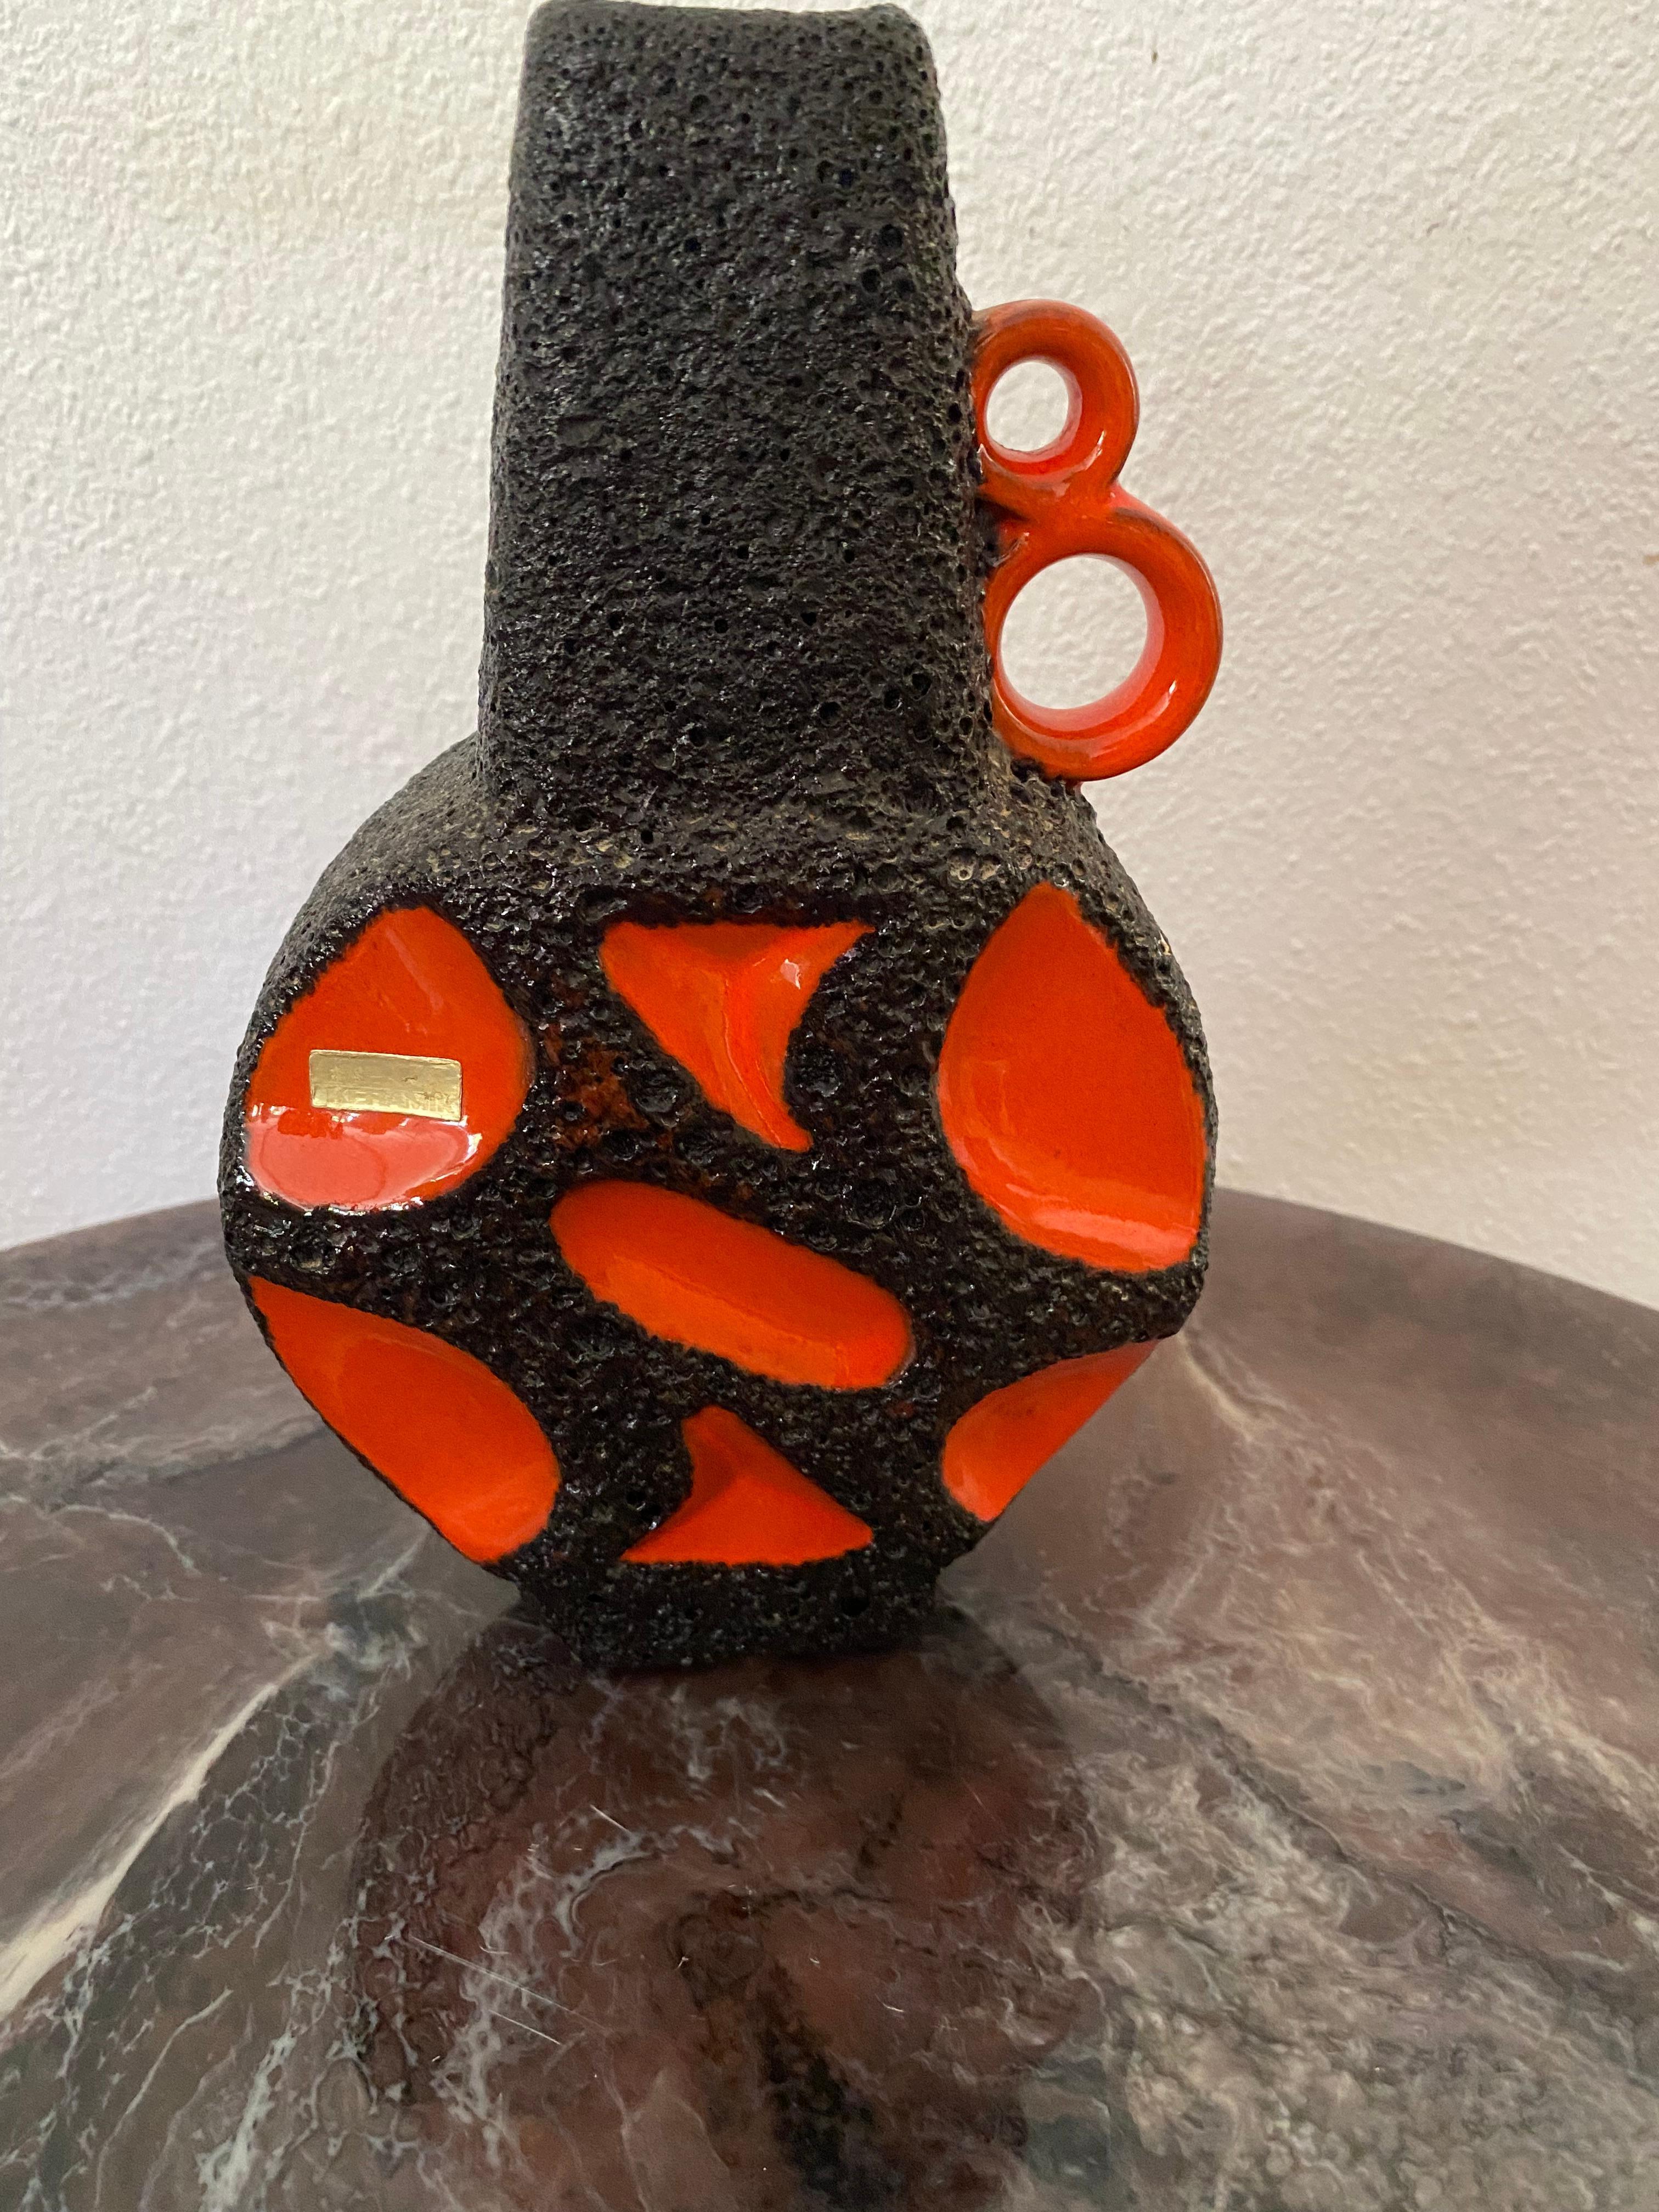 Un vase Roth Keramik, aux contours orange avec de la lave noire. Ces vases sont très recherchés. Le modèle est également appelé le Banjo, en raison de sa forme.
L'autocollant/l'étiquette d'origine est présent.

